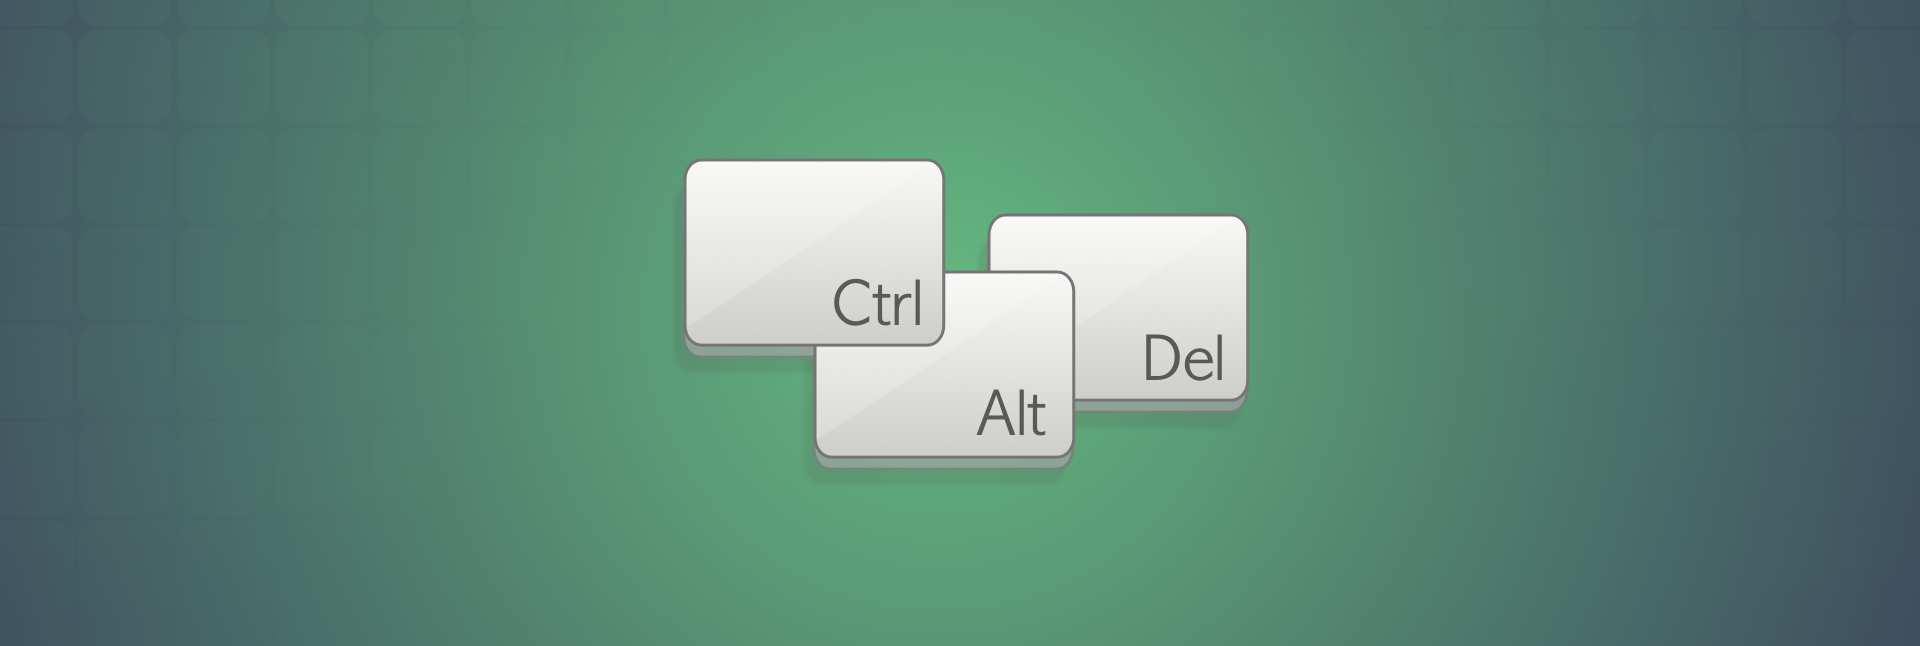 ctrl alt end remote desktop mac